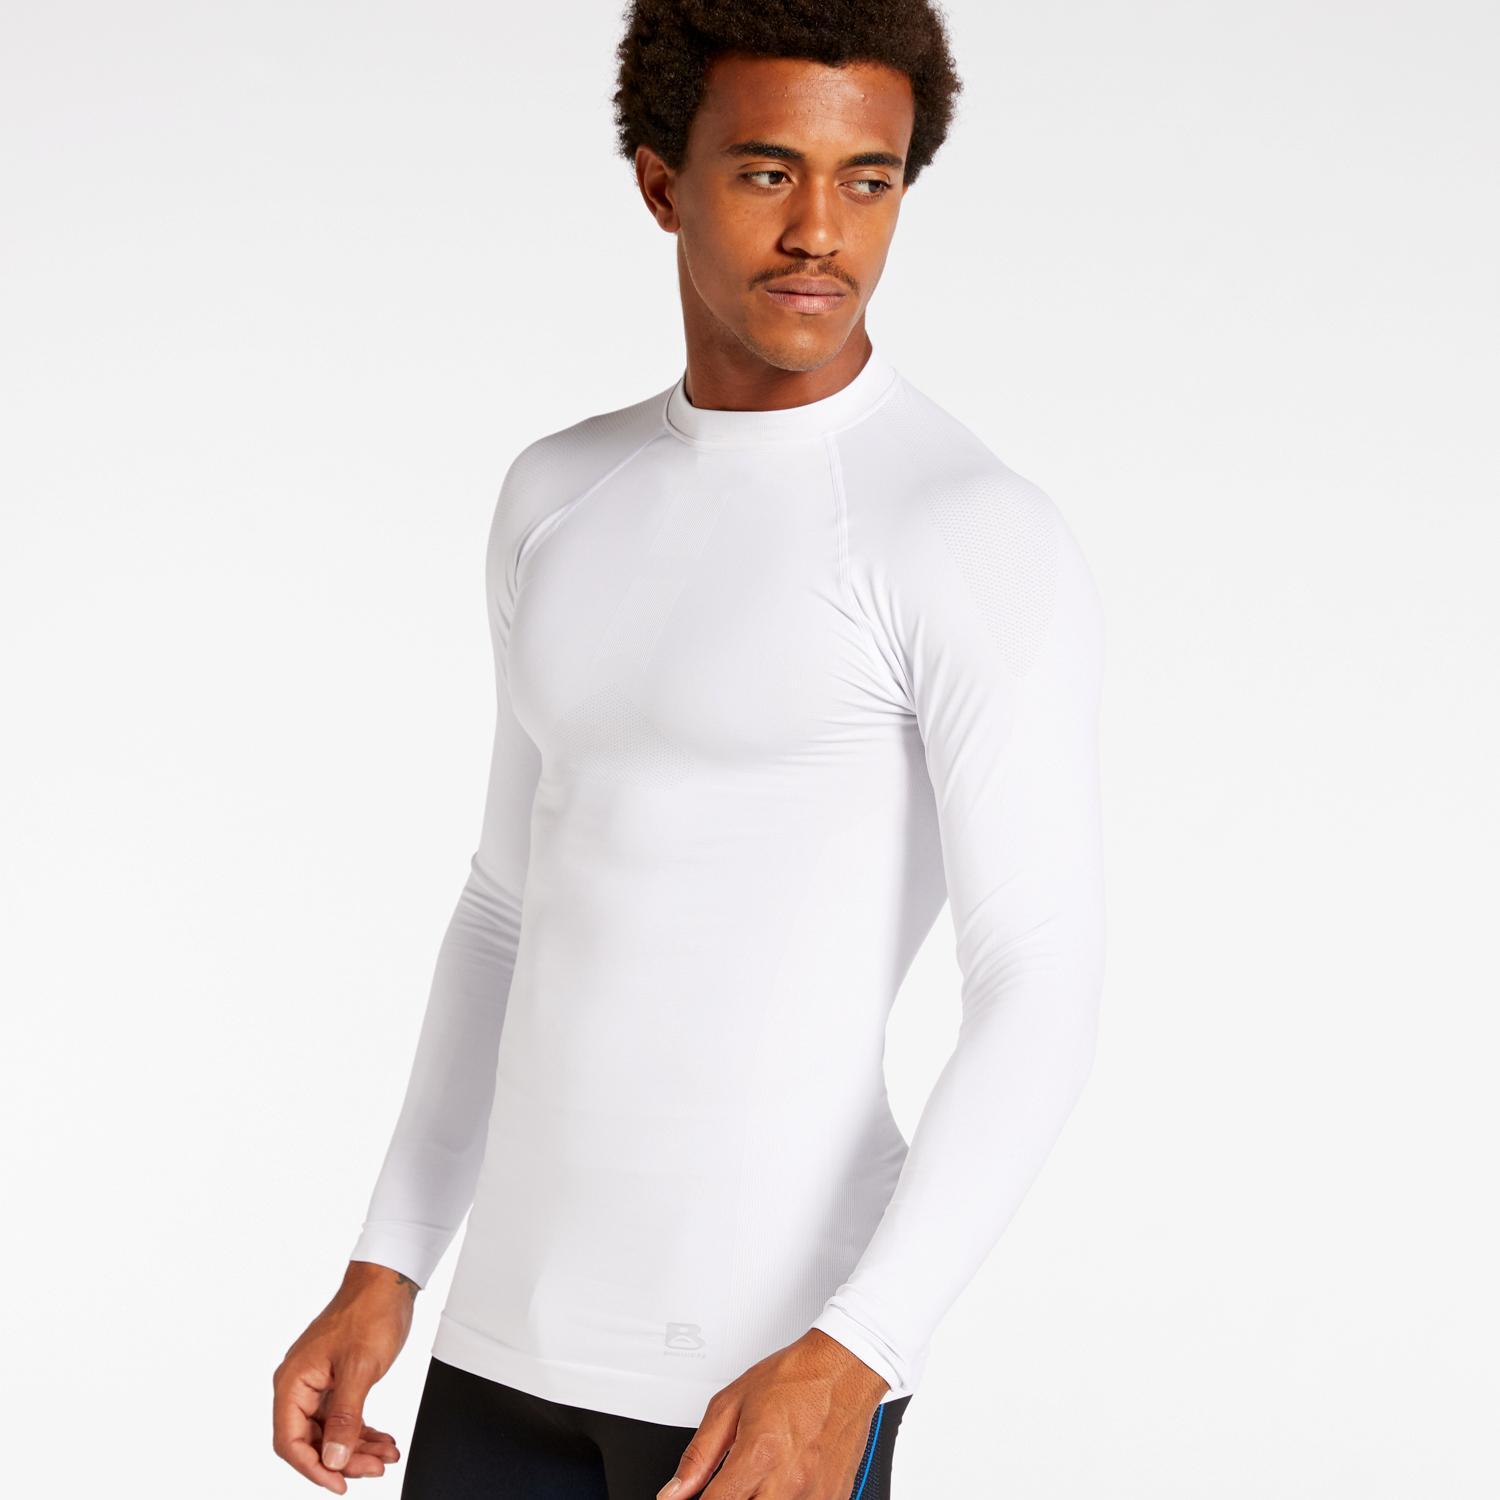 T-shirt Thermique Boriken - Maillot de corps Blanc Homme sports taille S/M